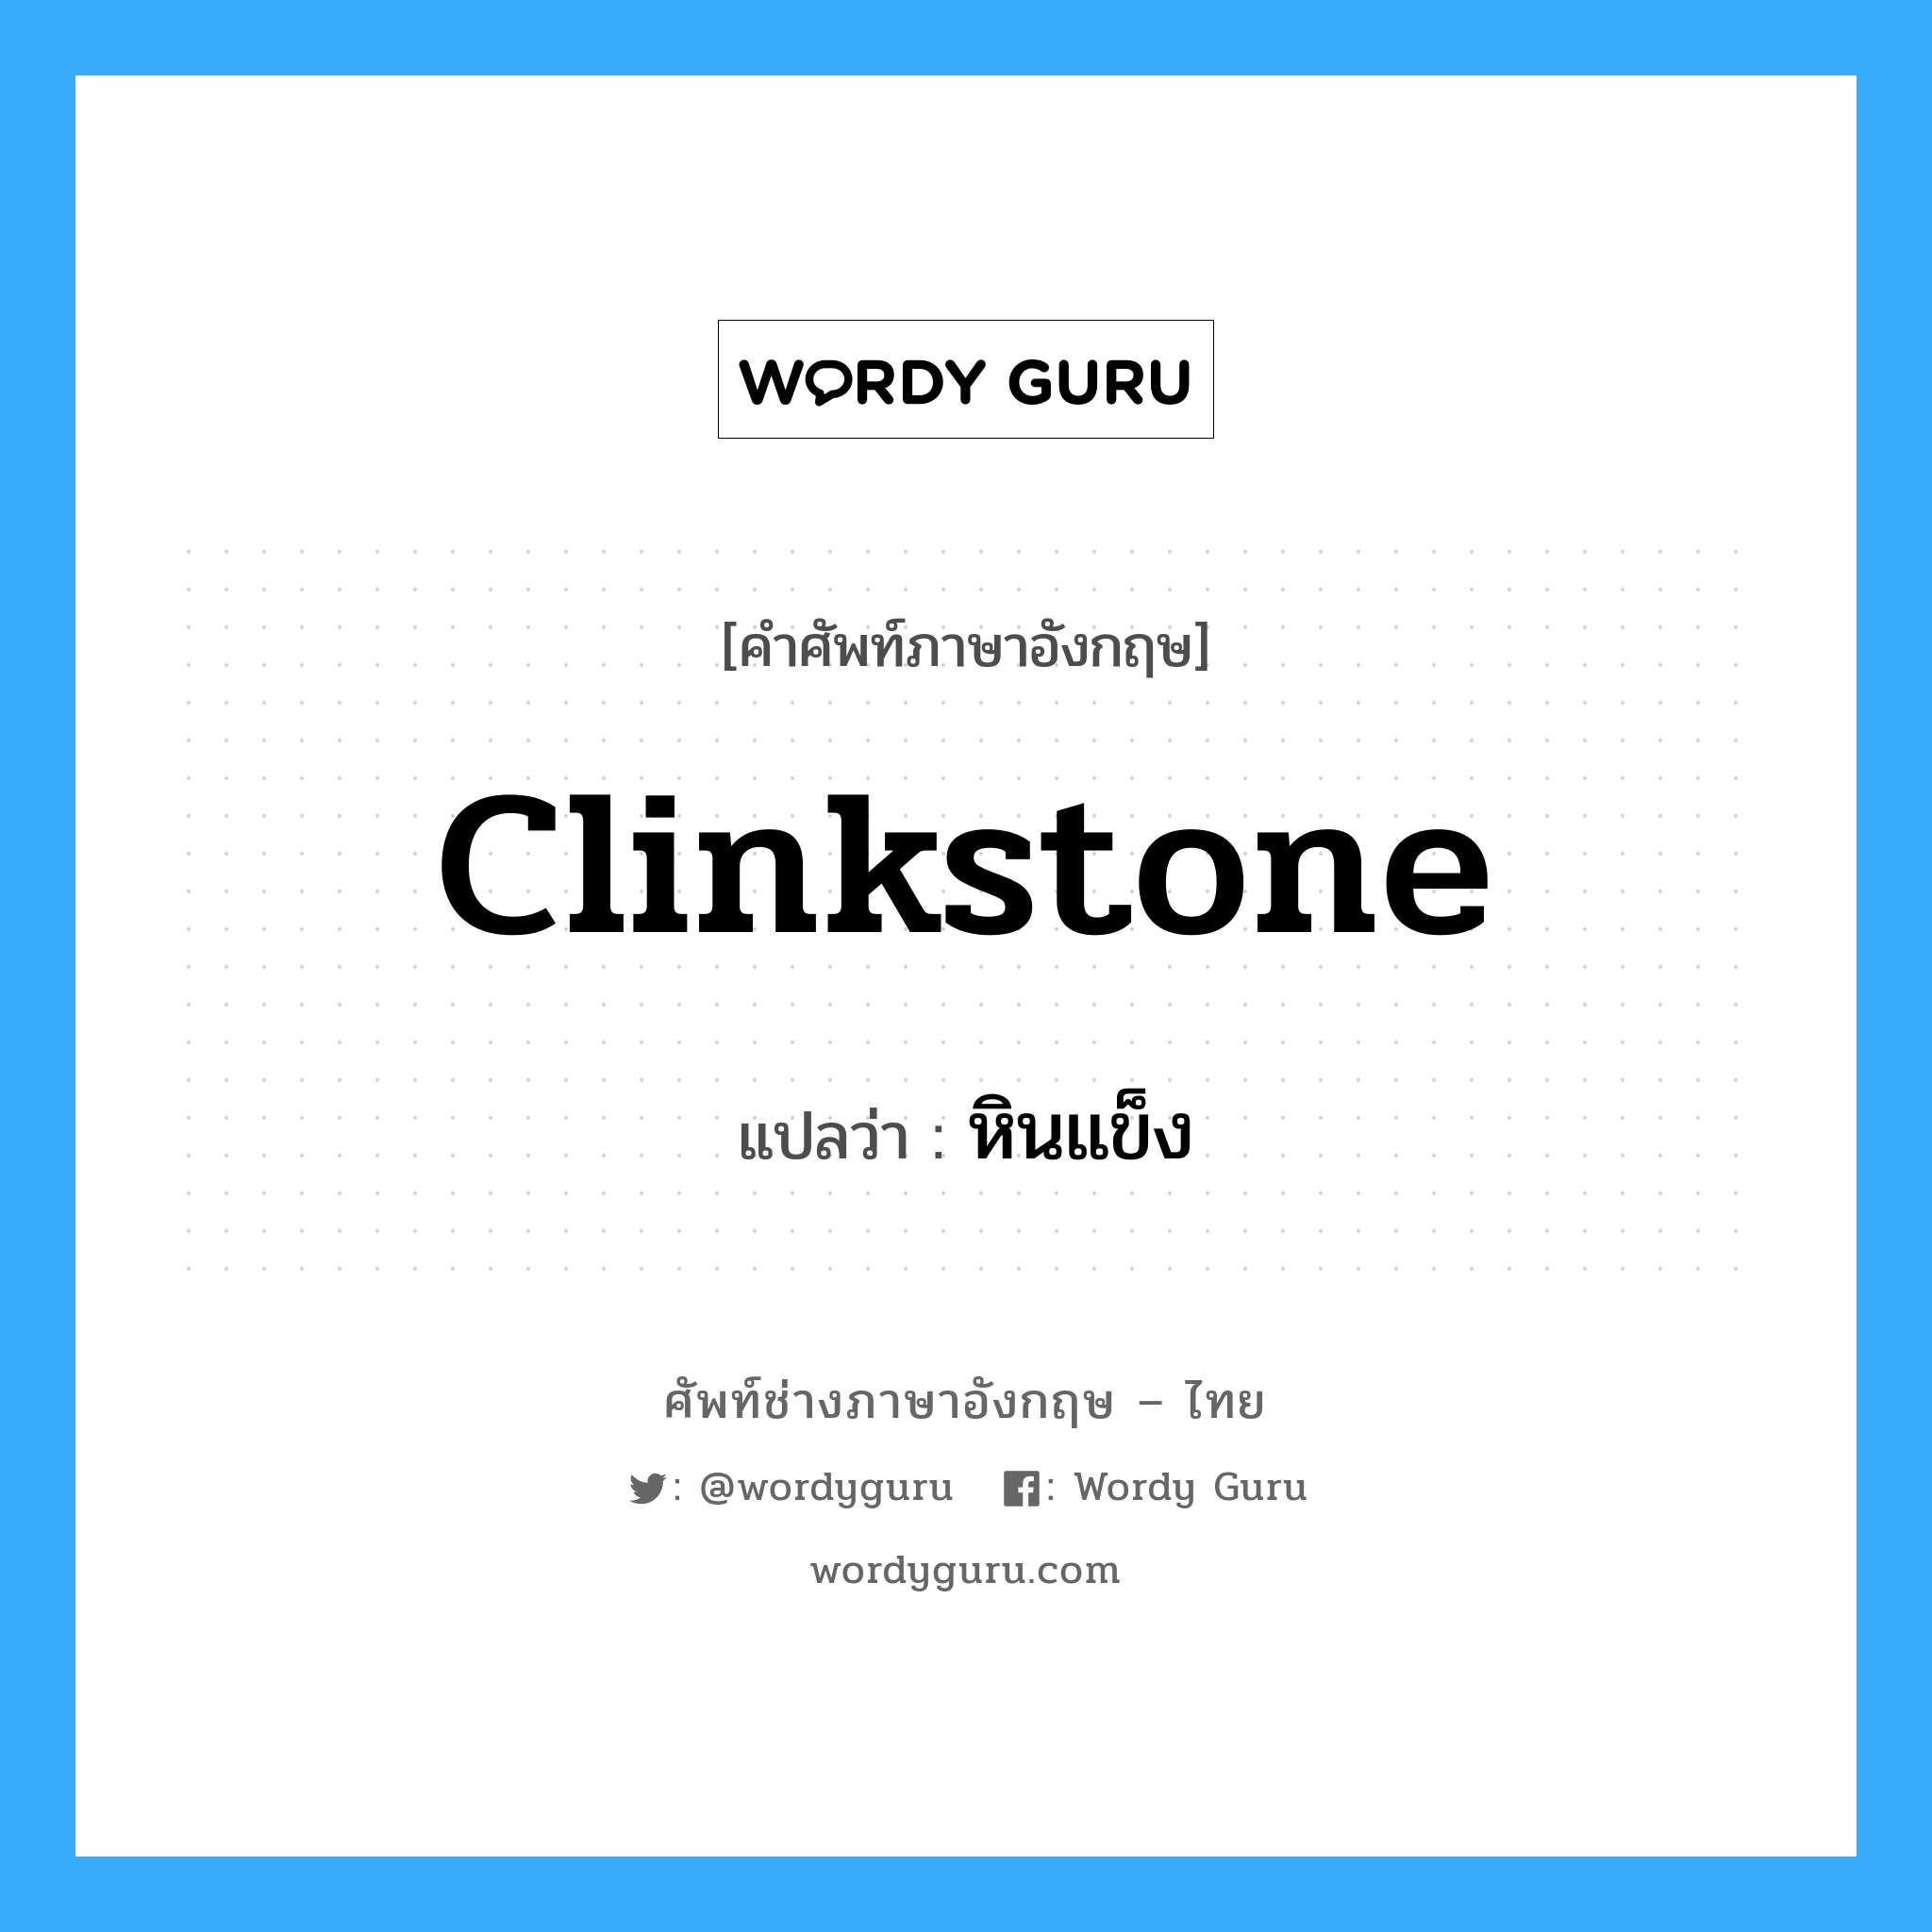 หินแข็ง ภาษาอังกฤษ?, คำศัพท์ช่างภาษาอังกฤษ - ไทย หินแข็ง คำศัพท์ภาษาอังกฤษ หินแข็ง แปลว่า clinkstone